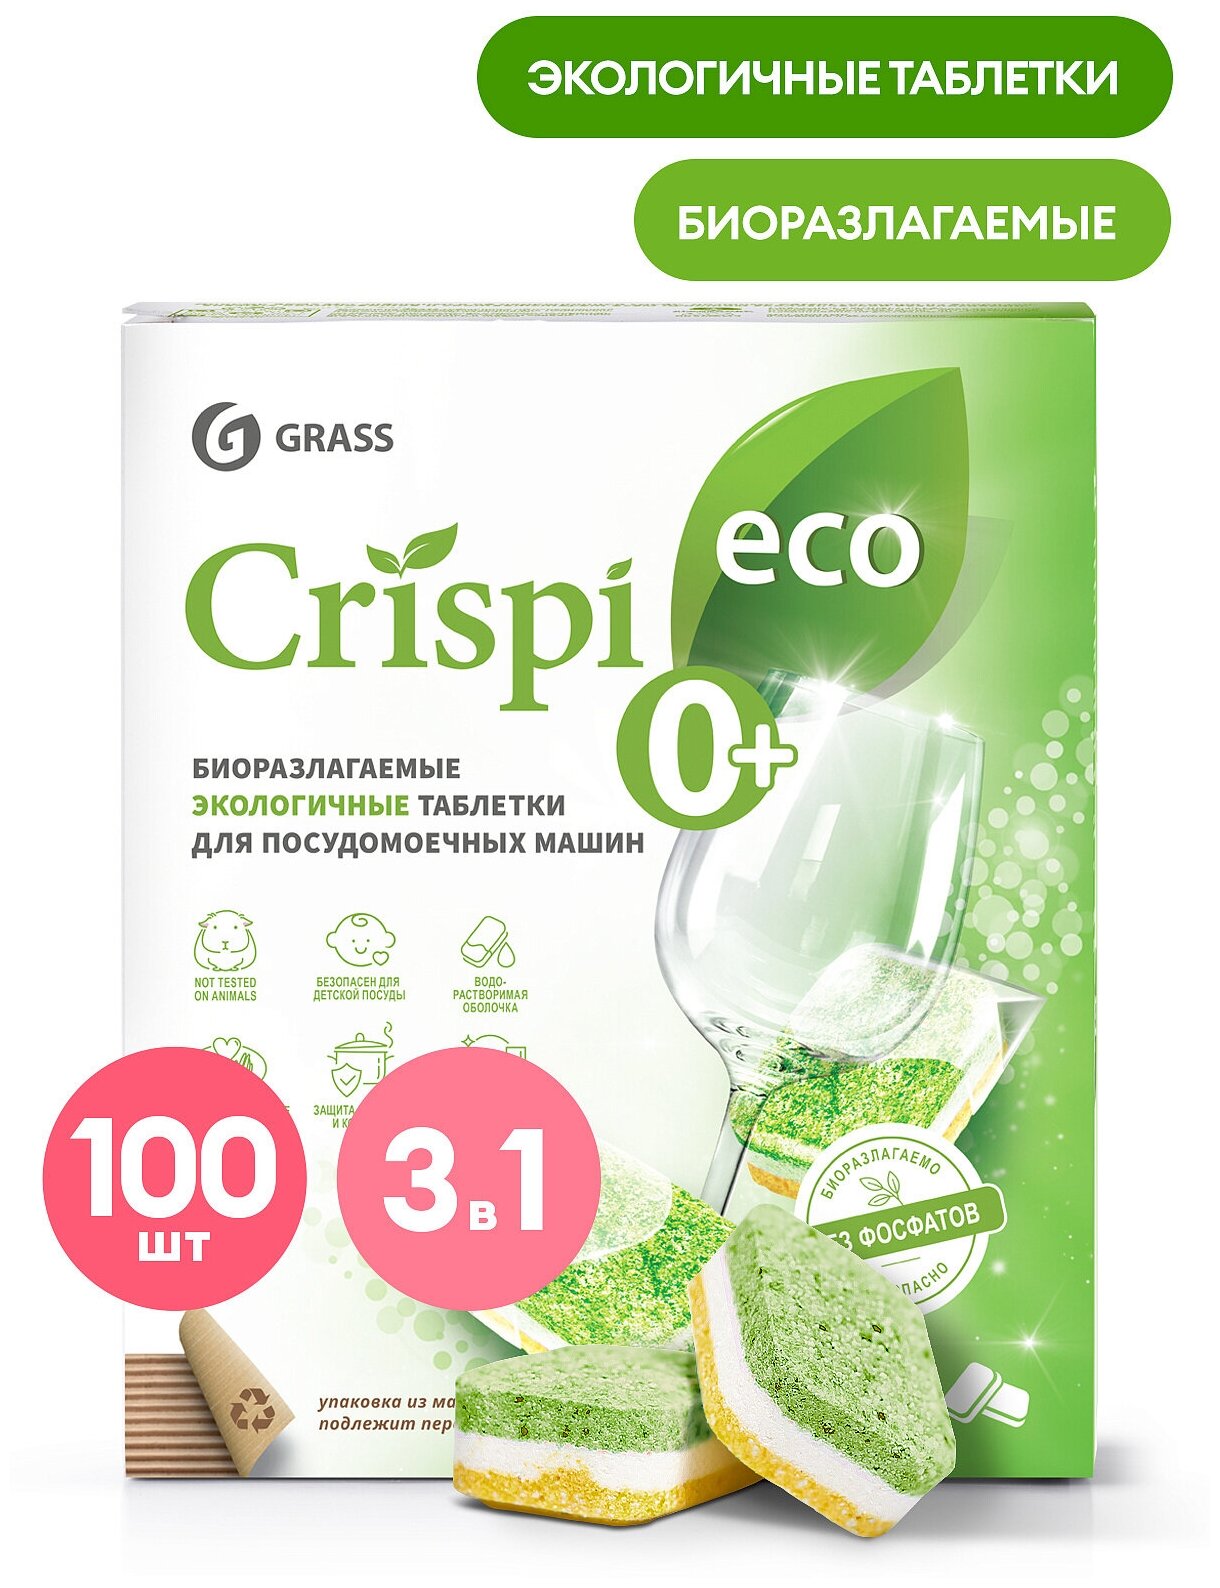 Grass : 125671 Экологичные таблетки для посудомоечных машин "CRISPI" (100шт)